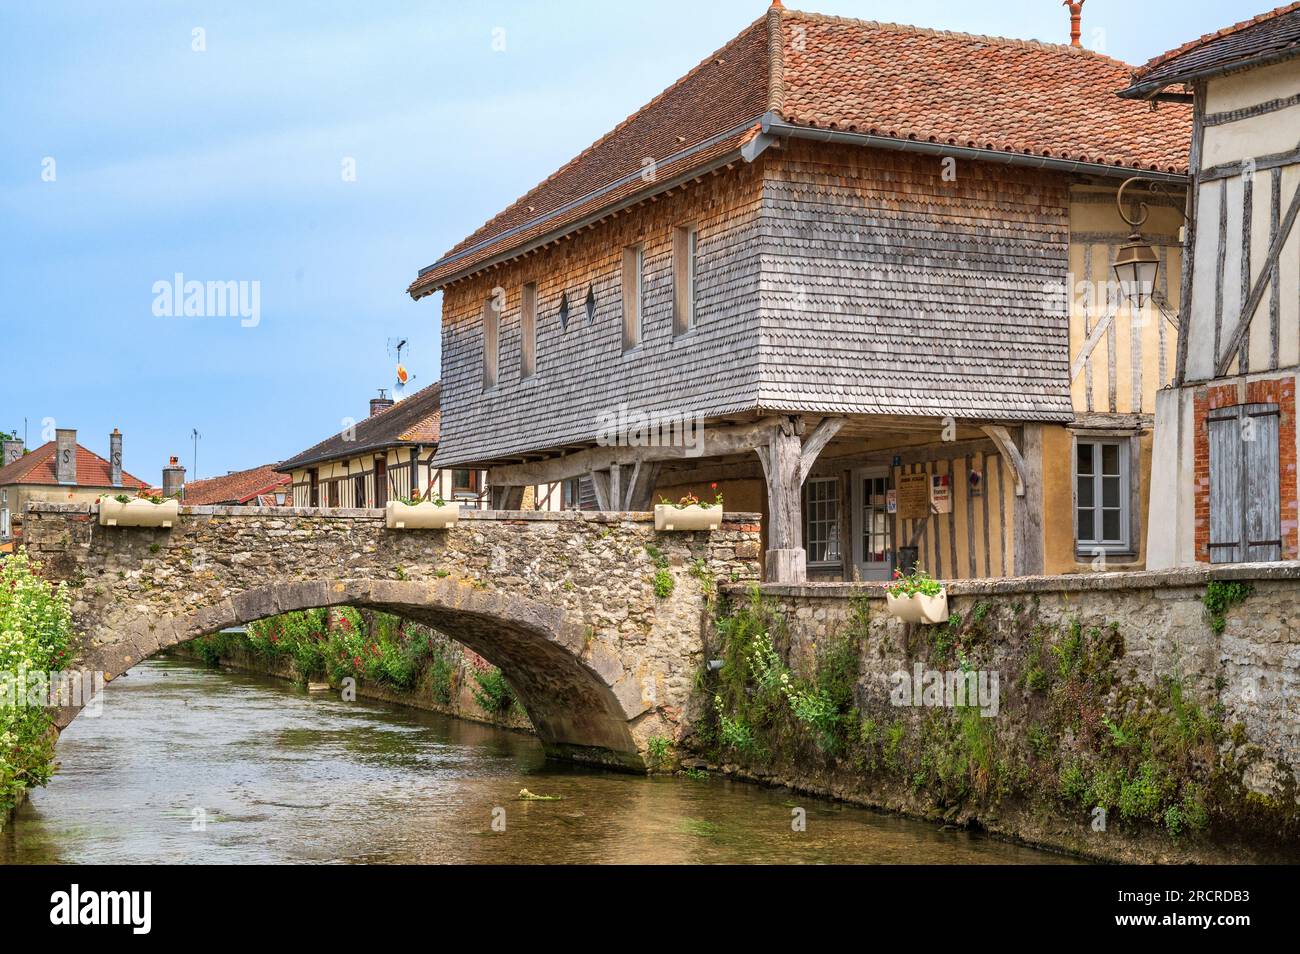 Le pont Henri IV et une maison traditionnelle au bord de la rivière la laines. Banque D'Images